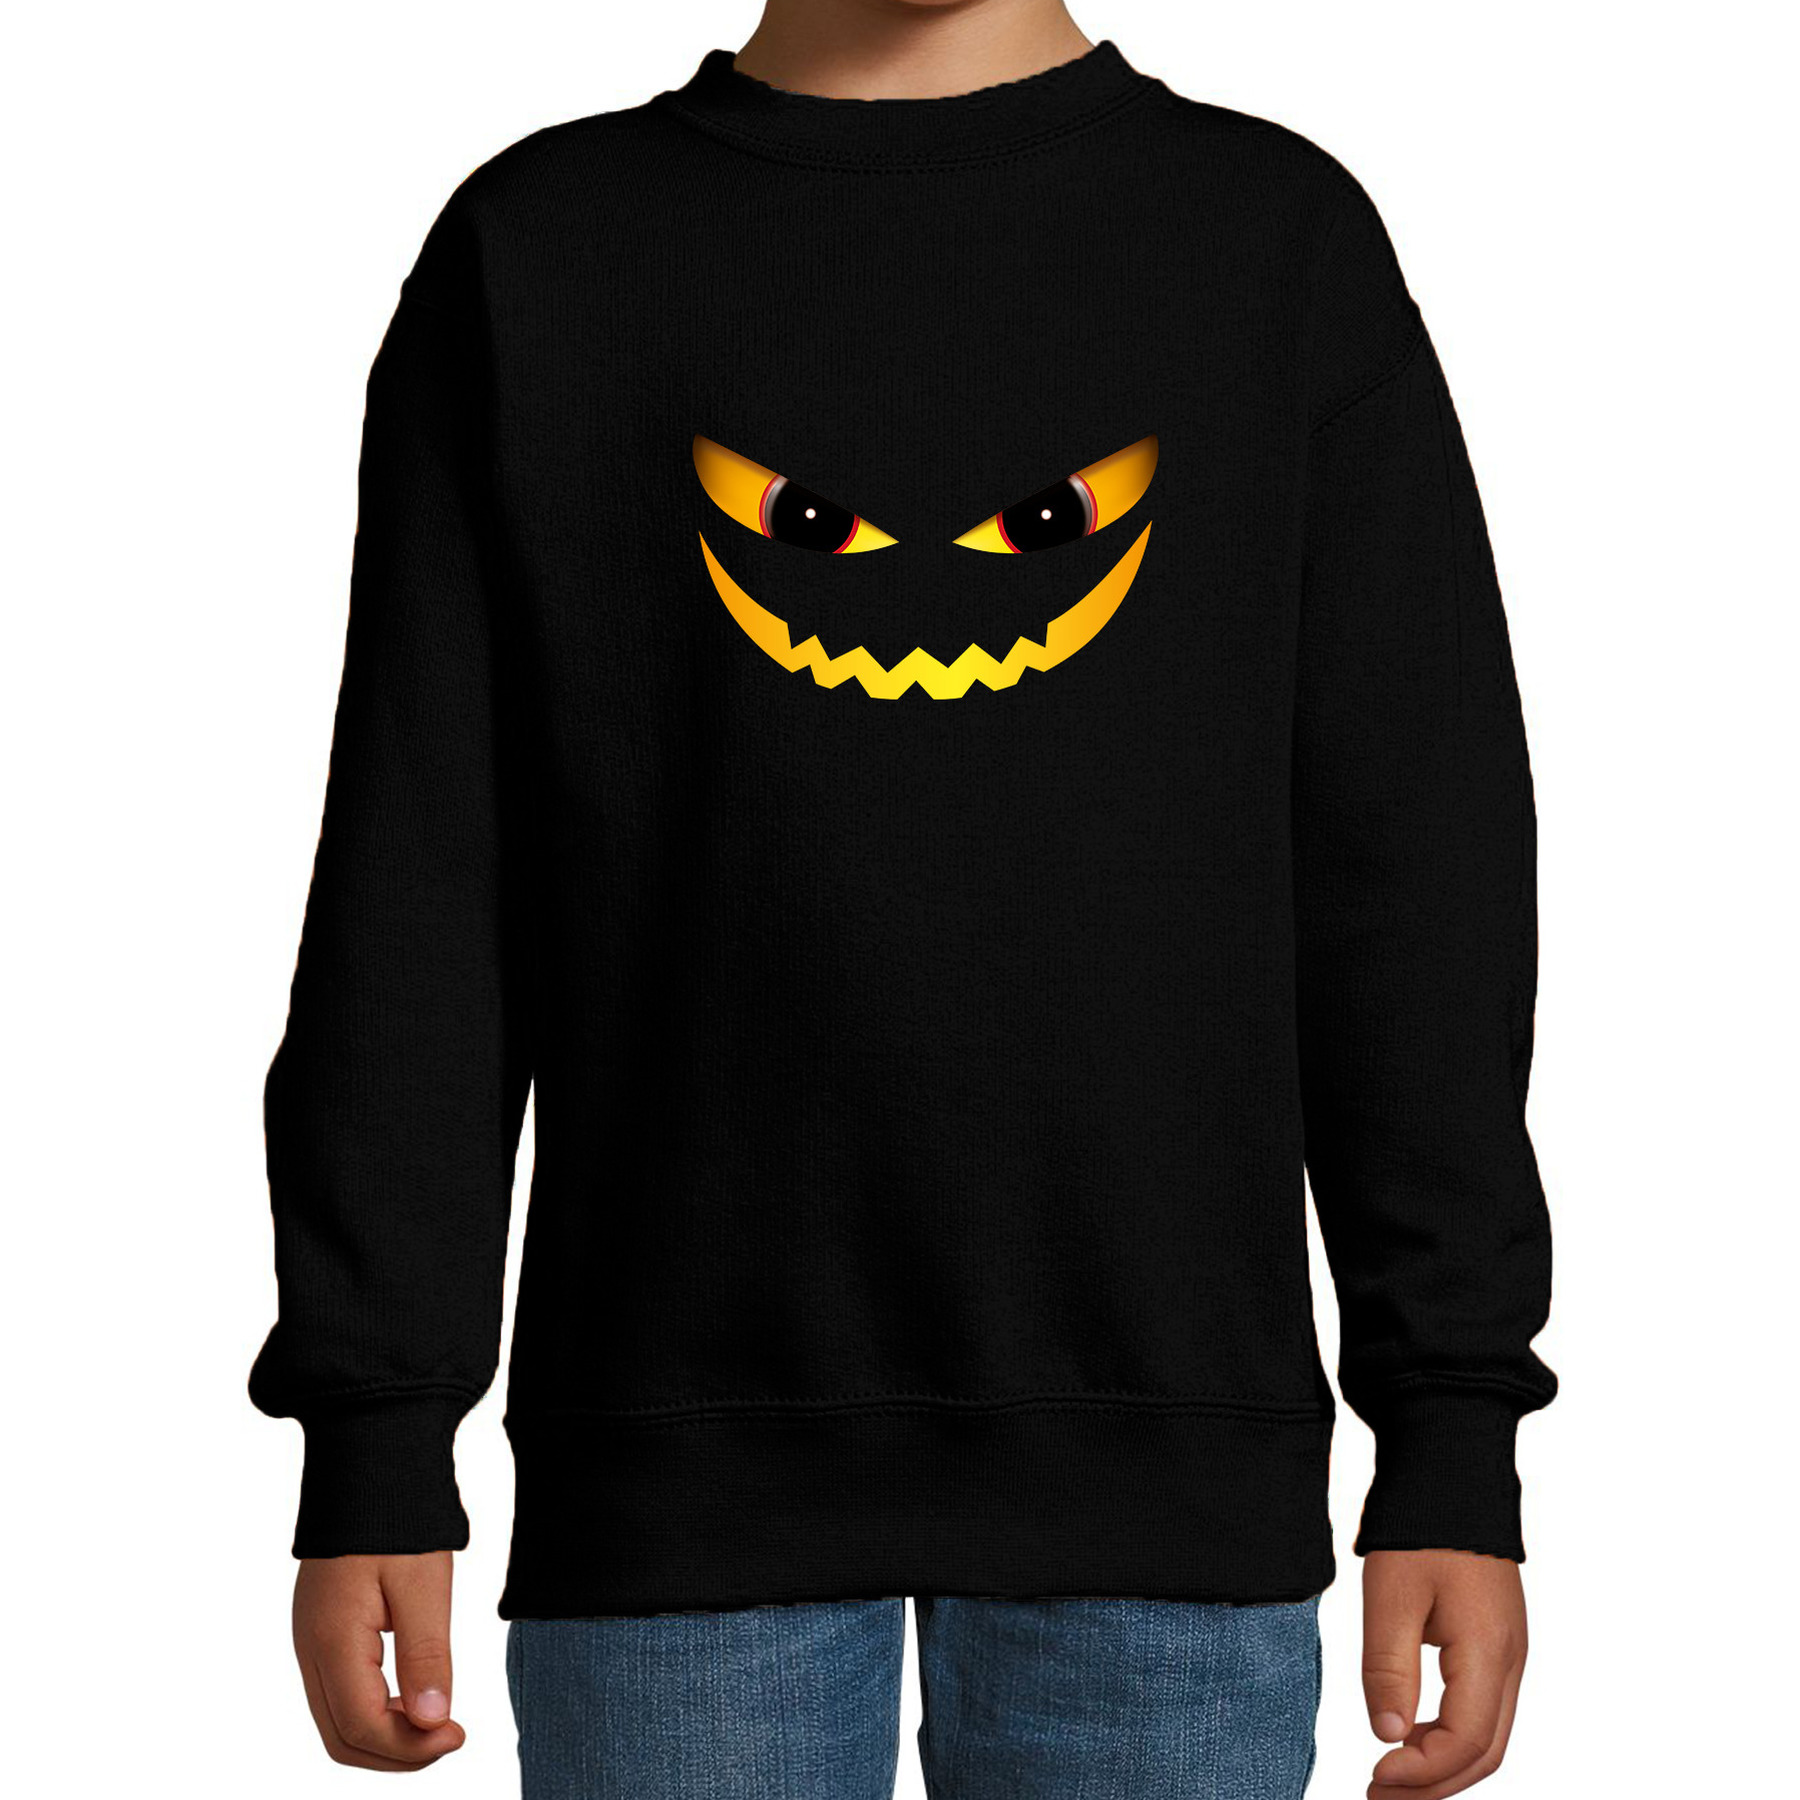 Duivel gezicht horror trui zwart voor kinderen verkleed sweater-kostuum